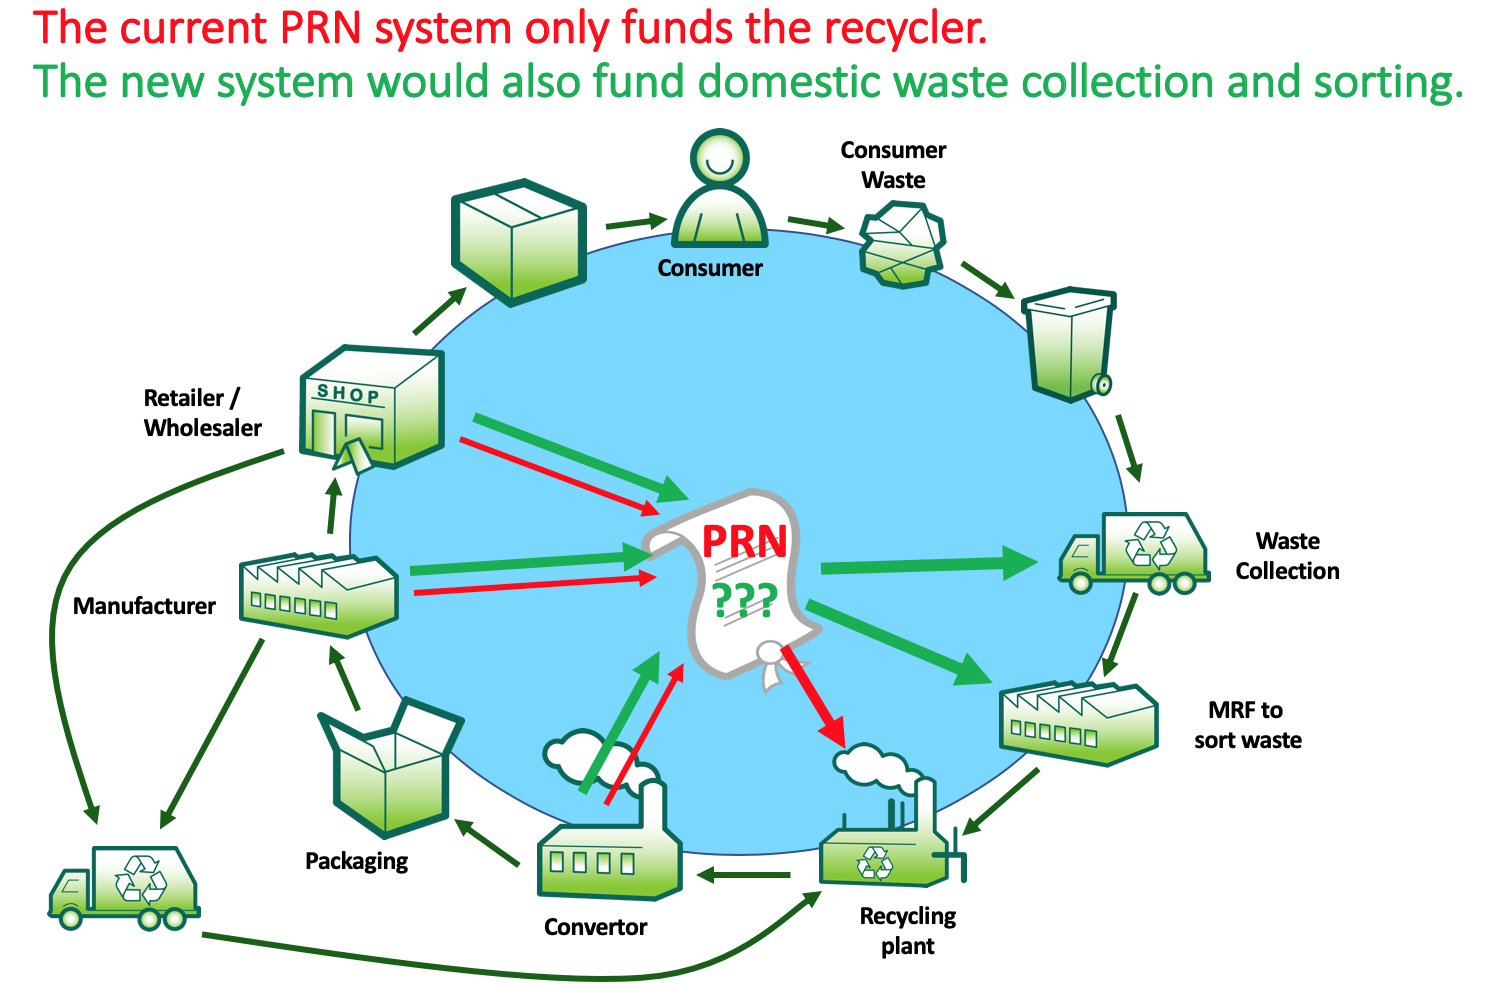 PRN Reform